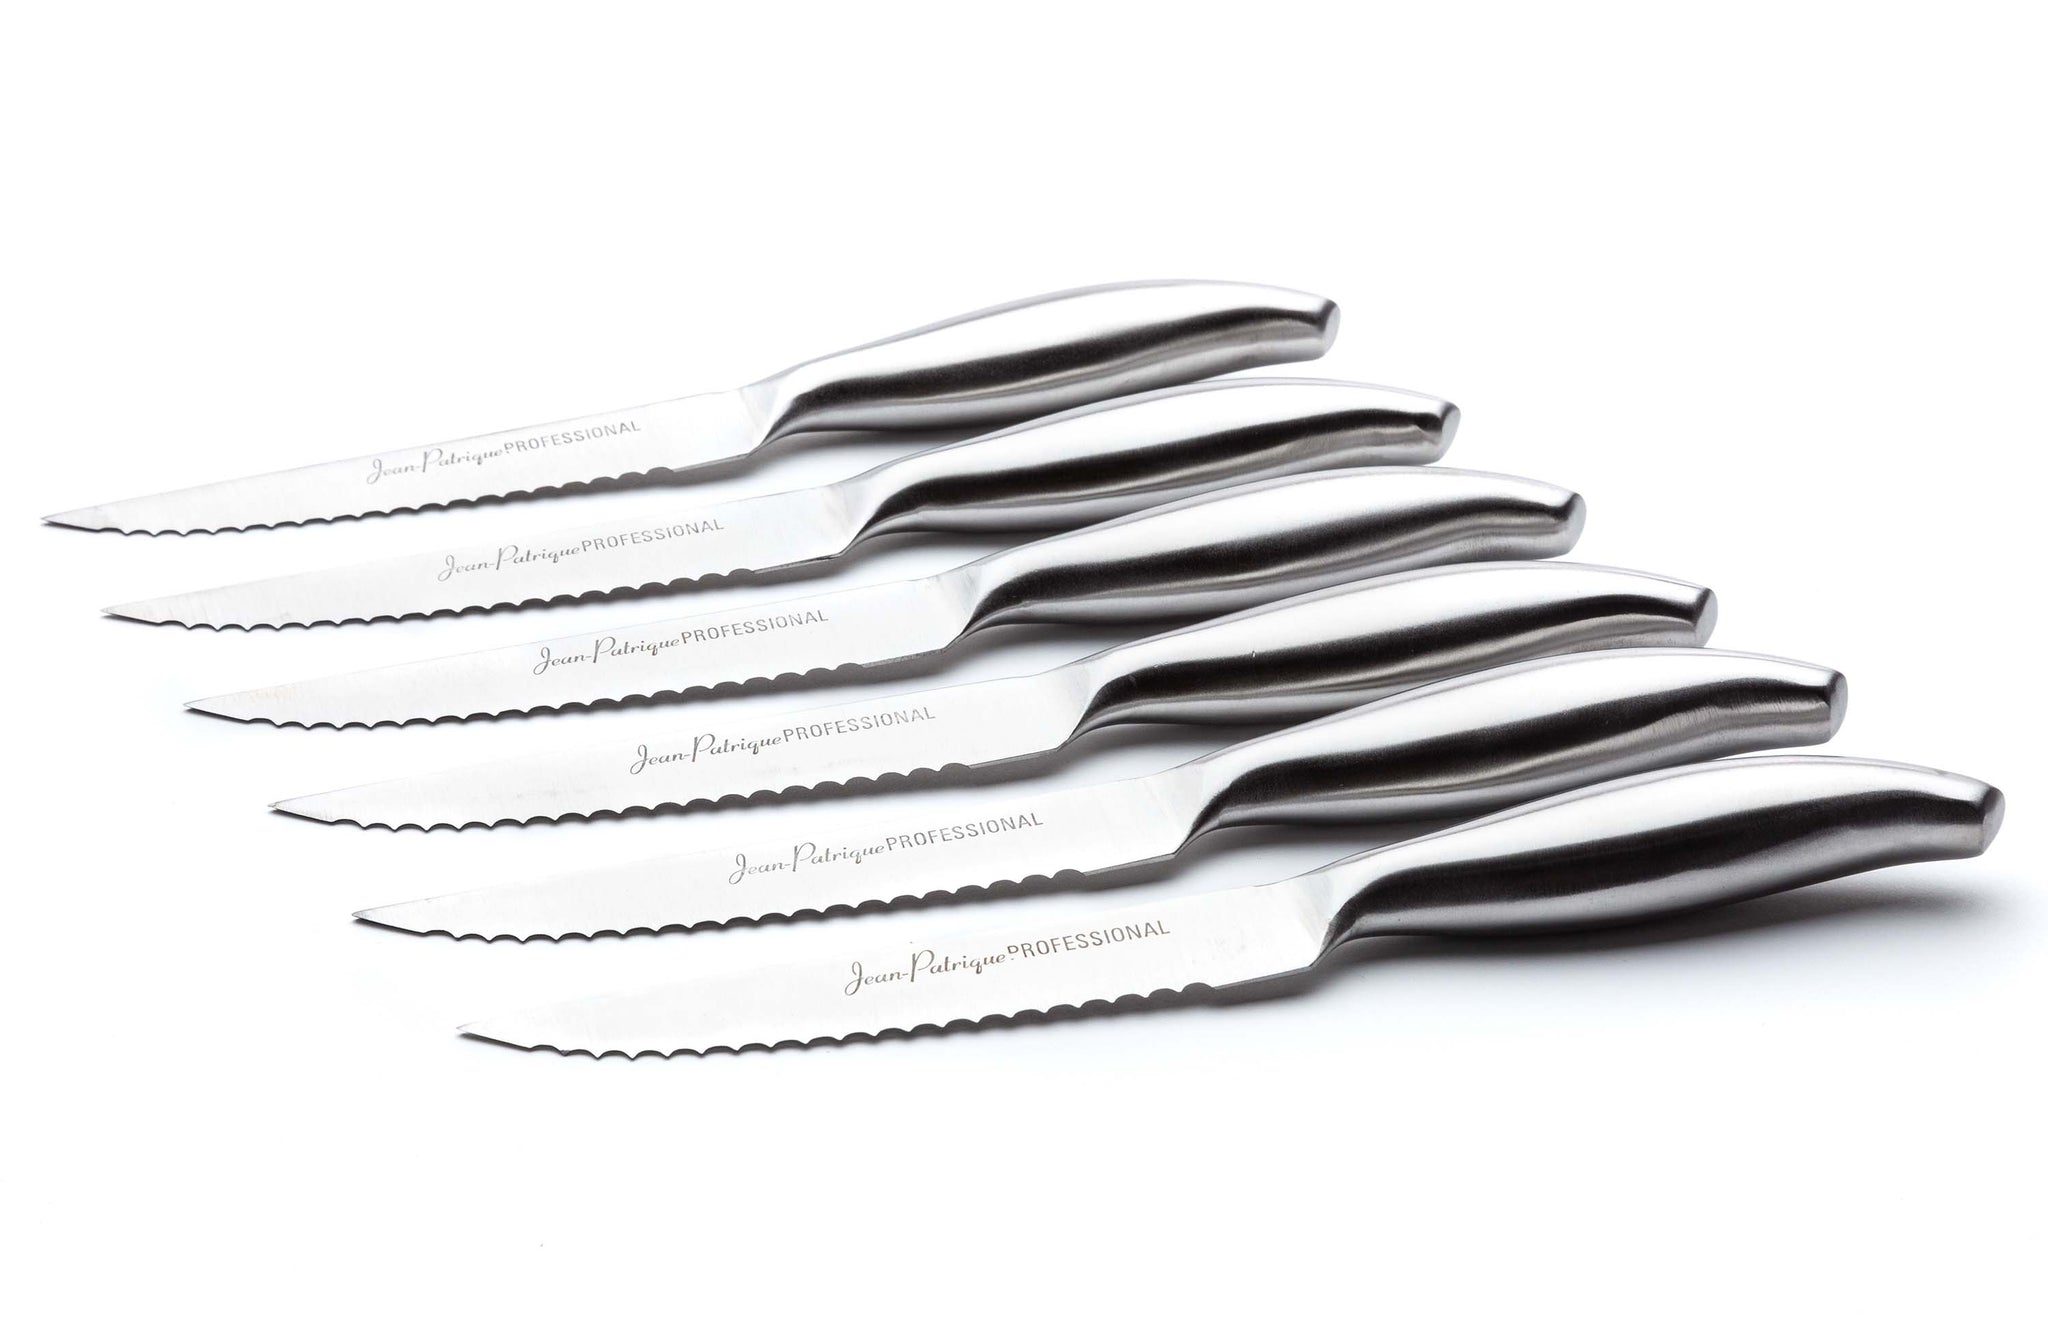 6 Amazing Steak Knives Dishwasher Safe for 2023